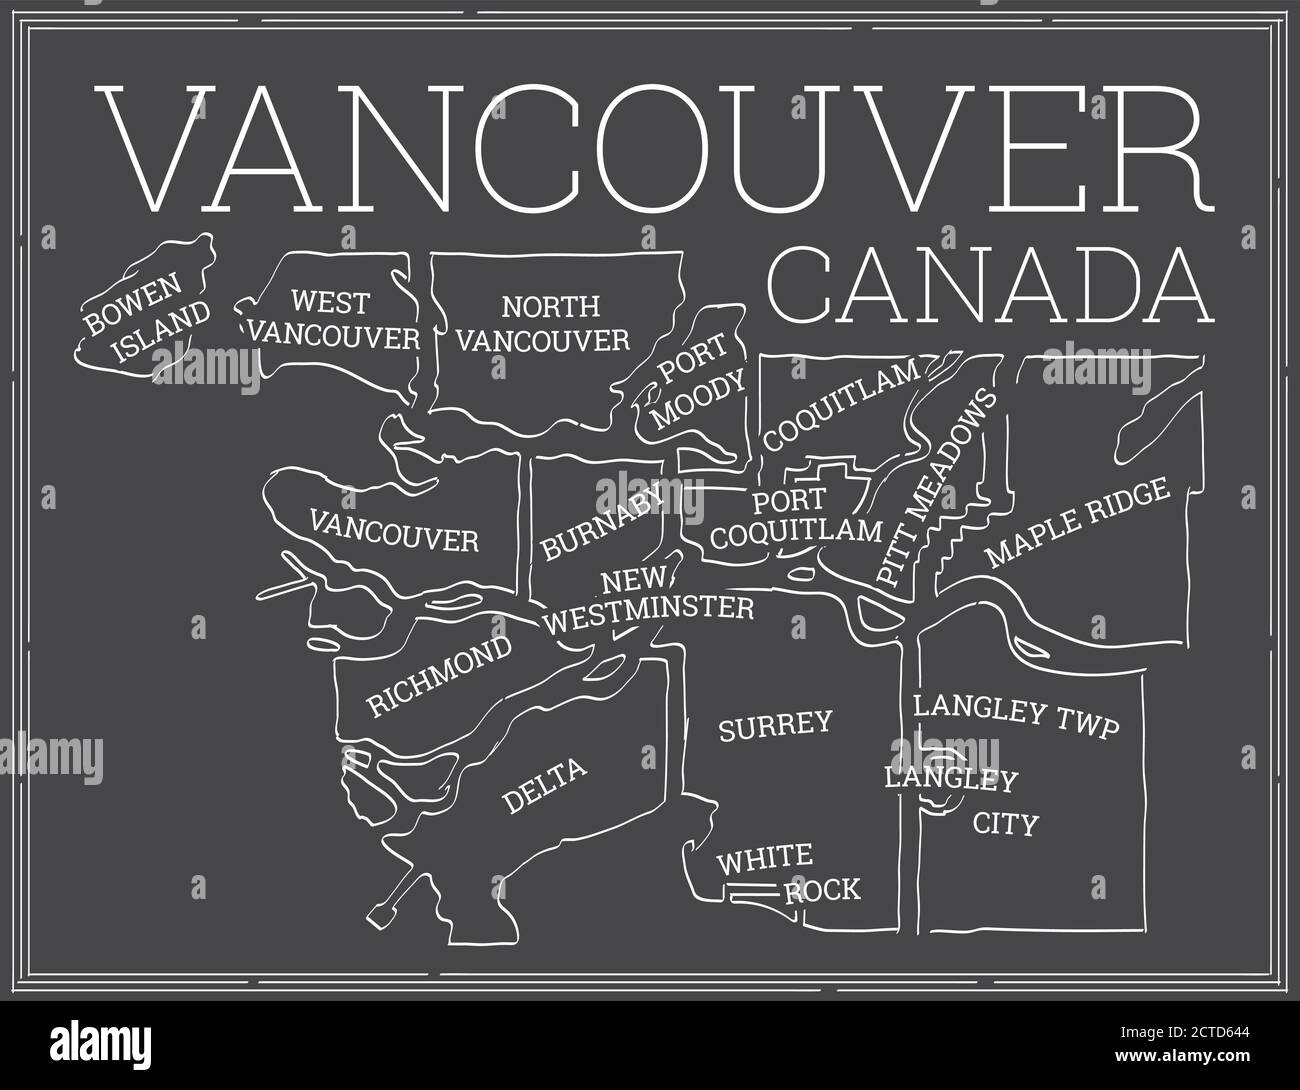 Dunkle stilisierte Karte von Greater Vancouver, British Columbia. Blackboard-Look. Weiß skizzierte Gemeinden der umliegenden Gebiete von Vancouver. Stock Vektor